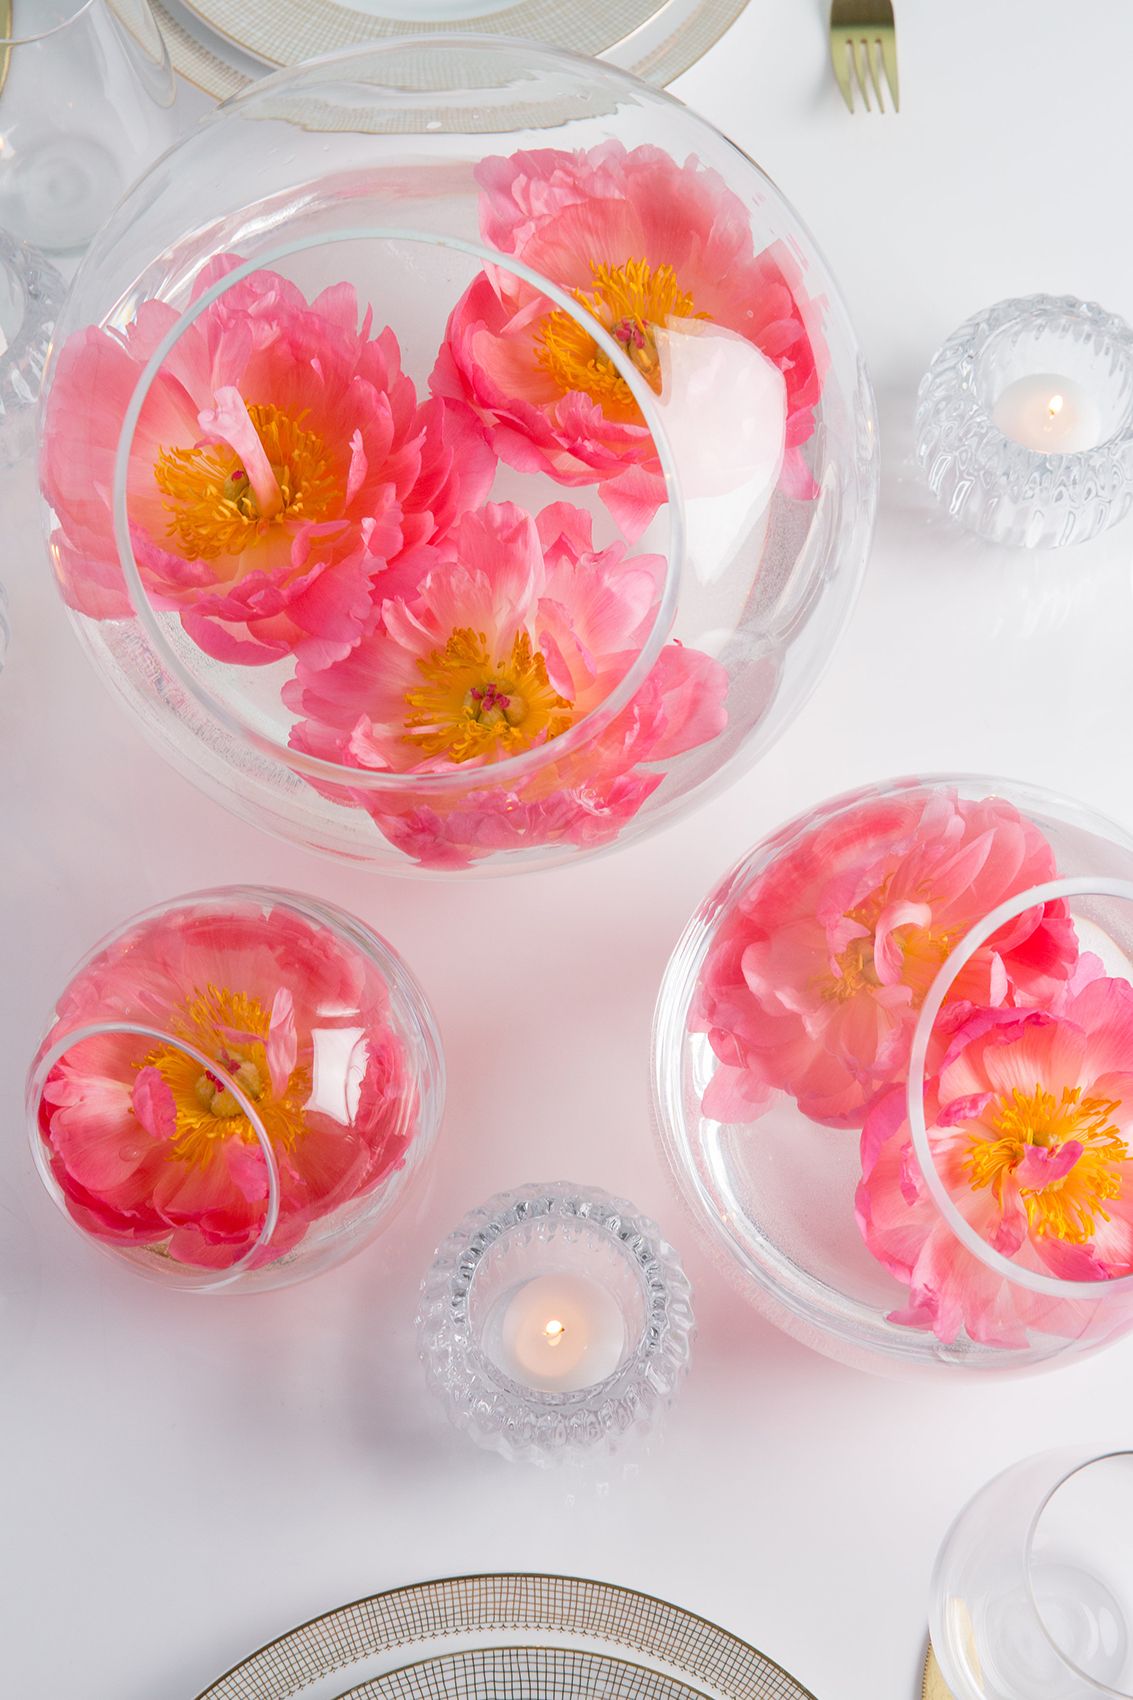 Rosa blomsteroppsats i glassboller